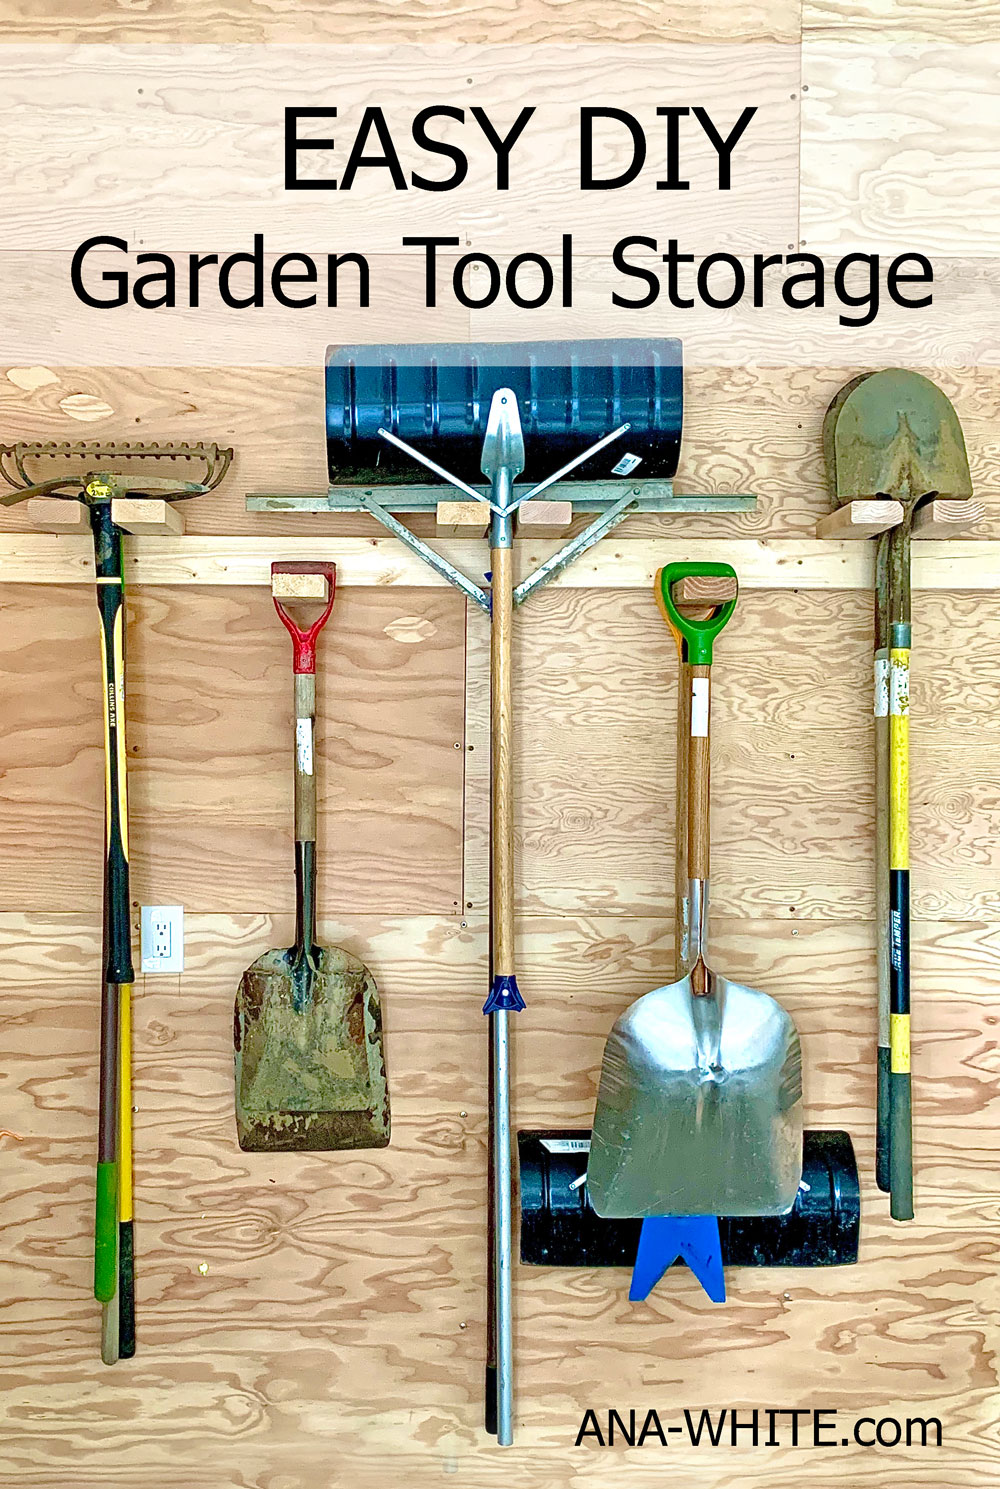 Garden Tool Storage Ana White, Garden Tool Storage Plans